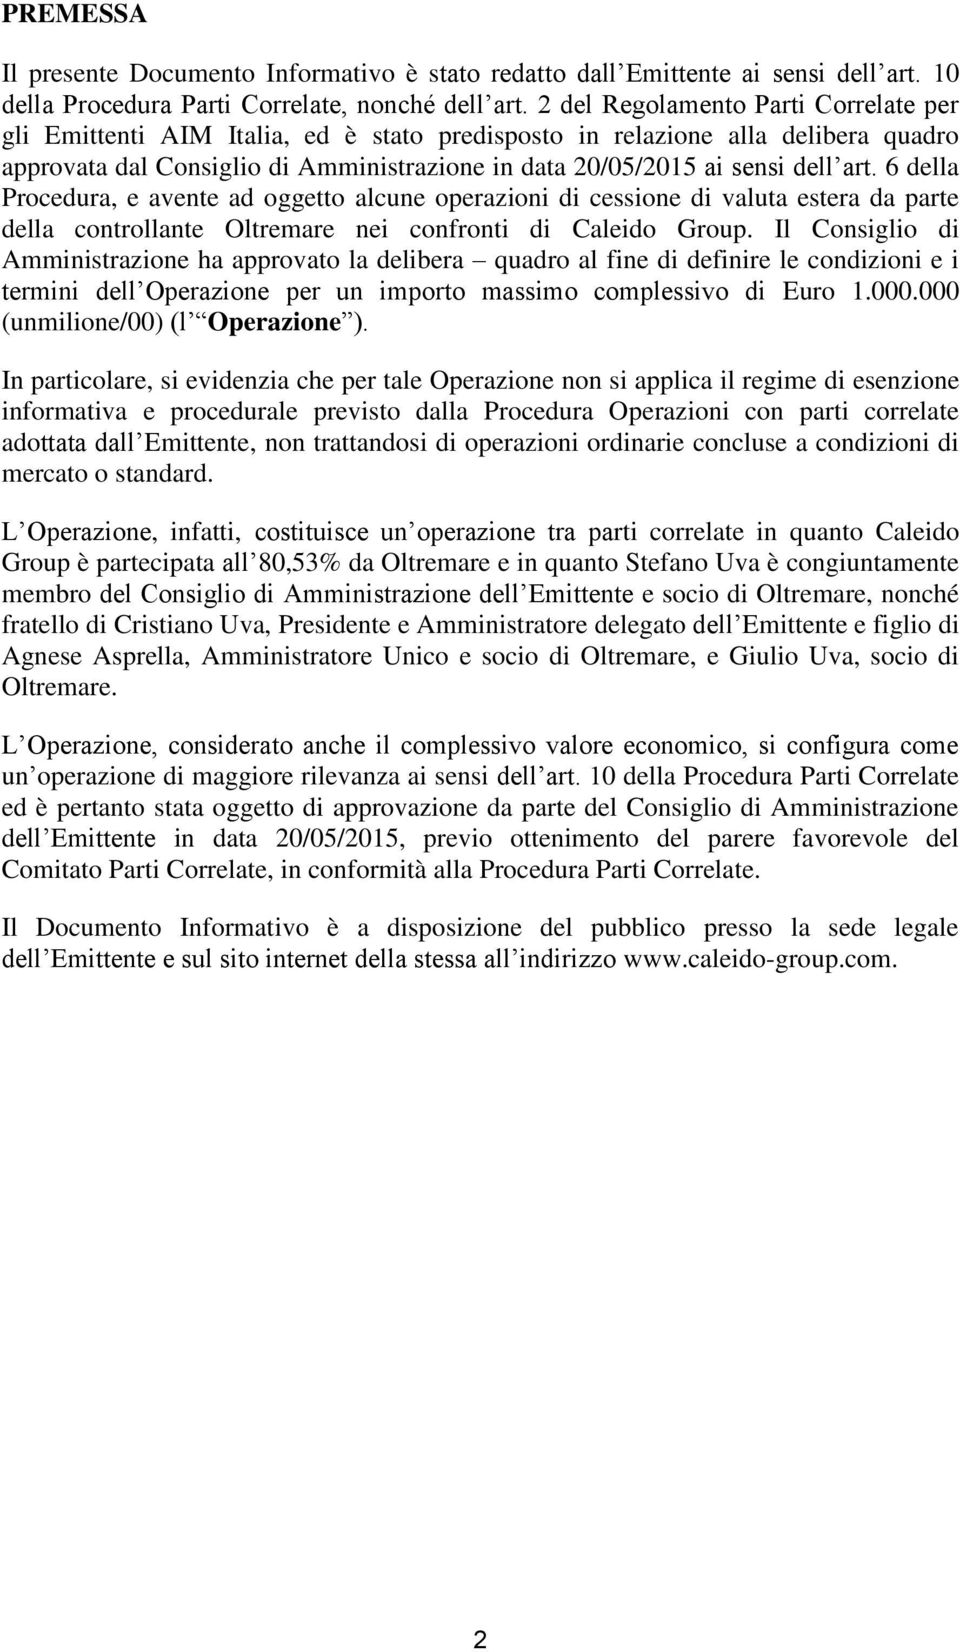 art. 6 della Procedura, e avente ad oggetto alcune operazioni di cessione di valuta estera da parte della controllante Oltremare nei confronti di Caleido Group.